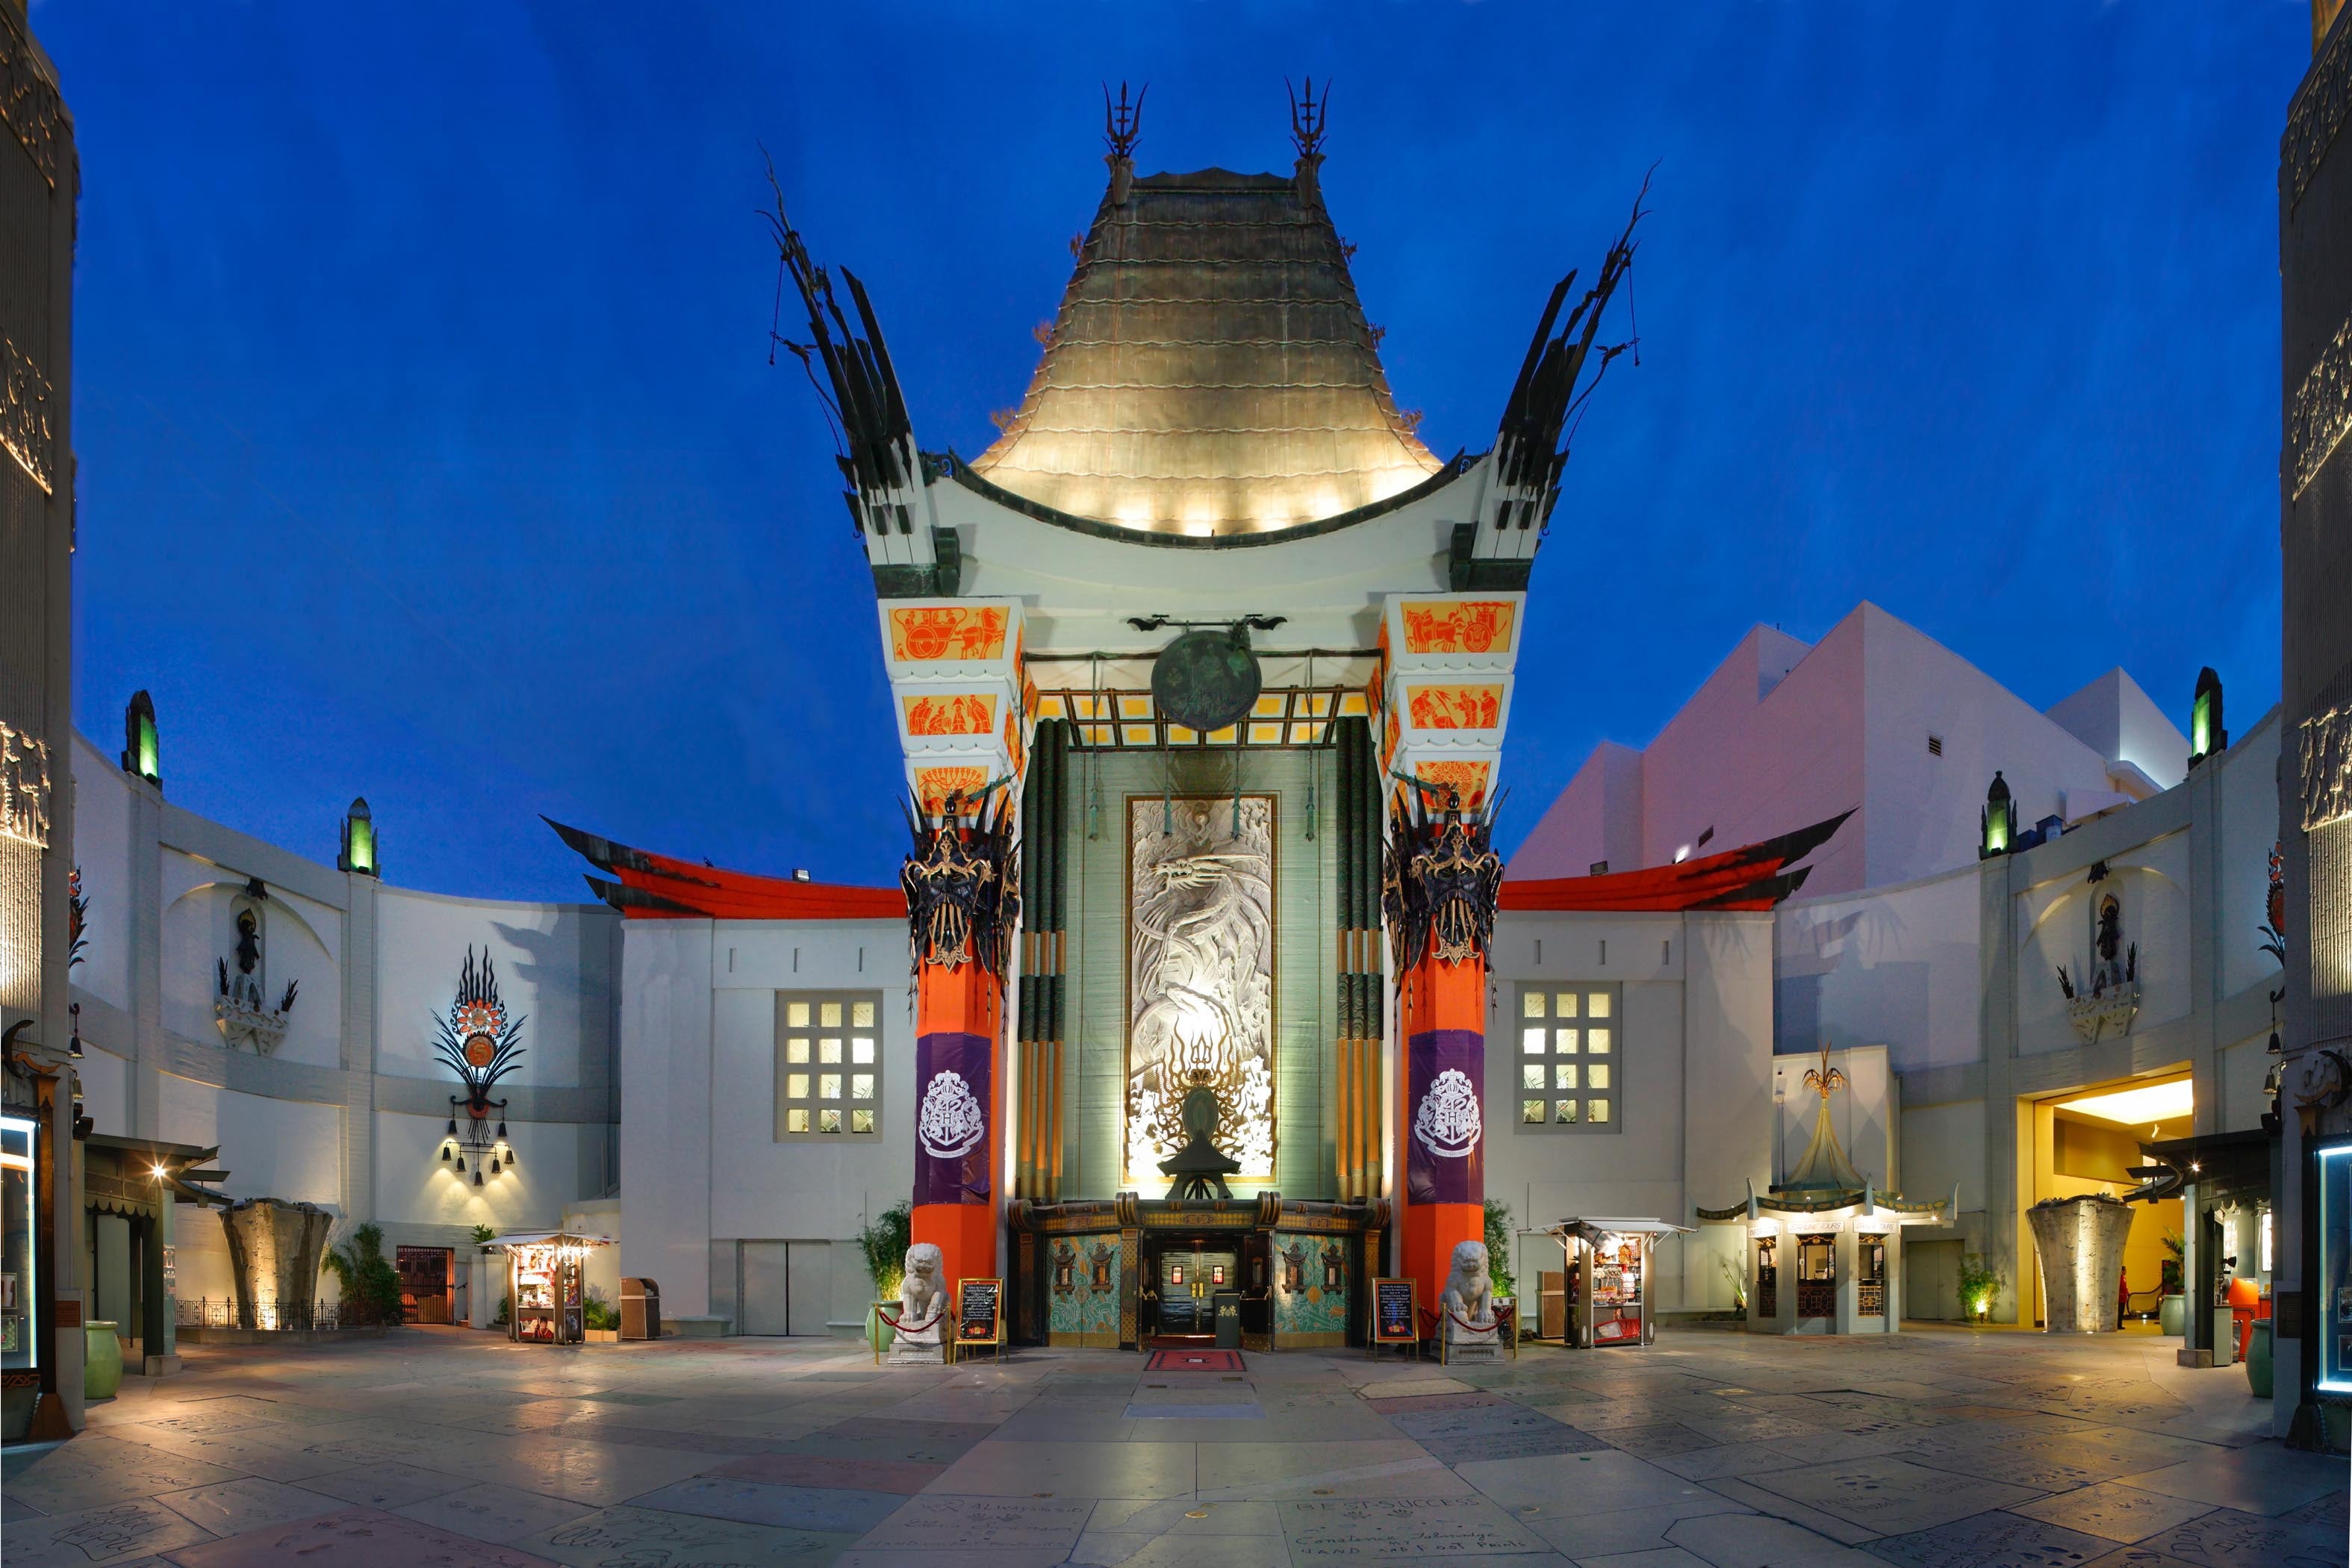 El Teatro Chino TCL | Discover Los Angeles